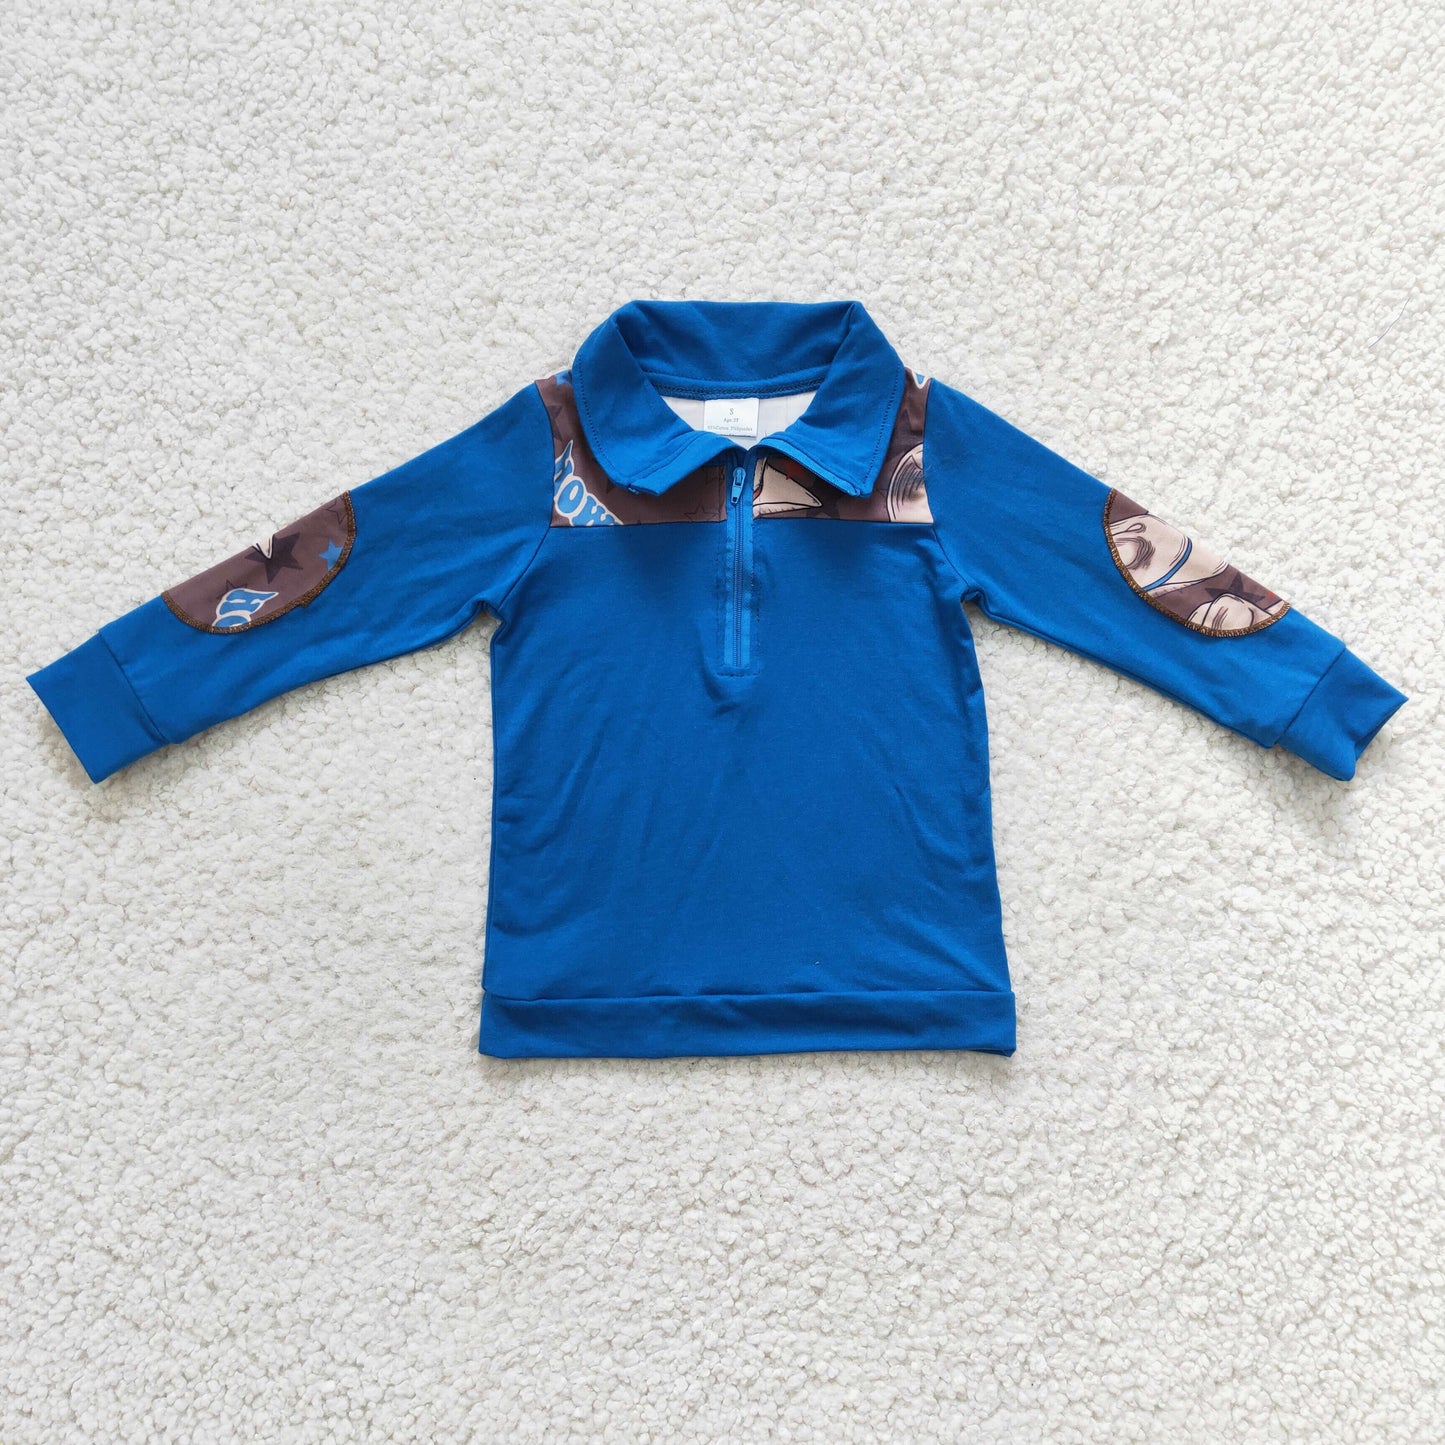 Boys western design blue zipper pullover top     BT0101